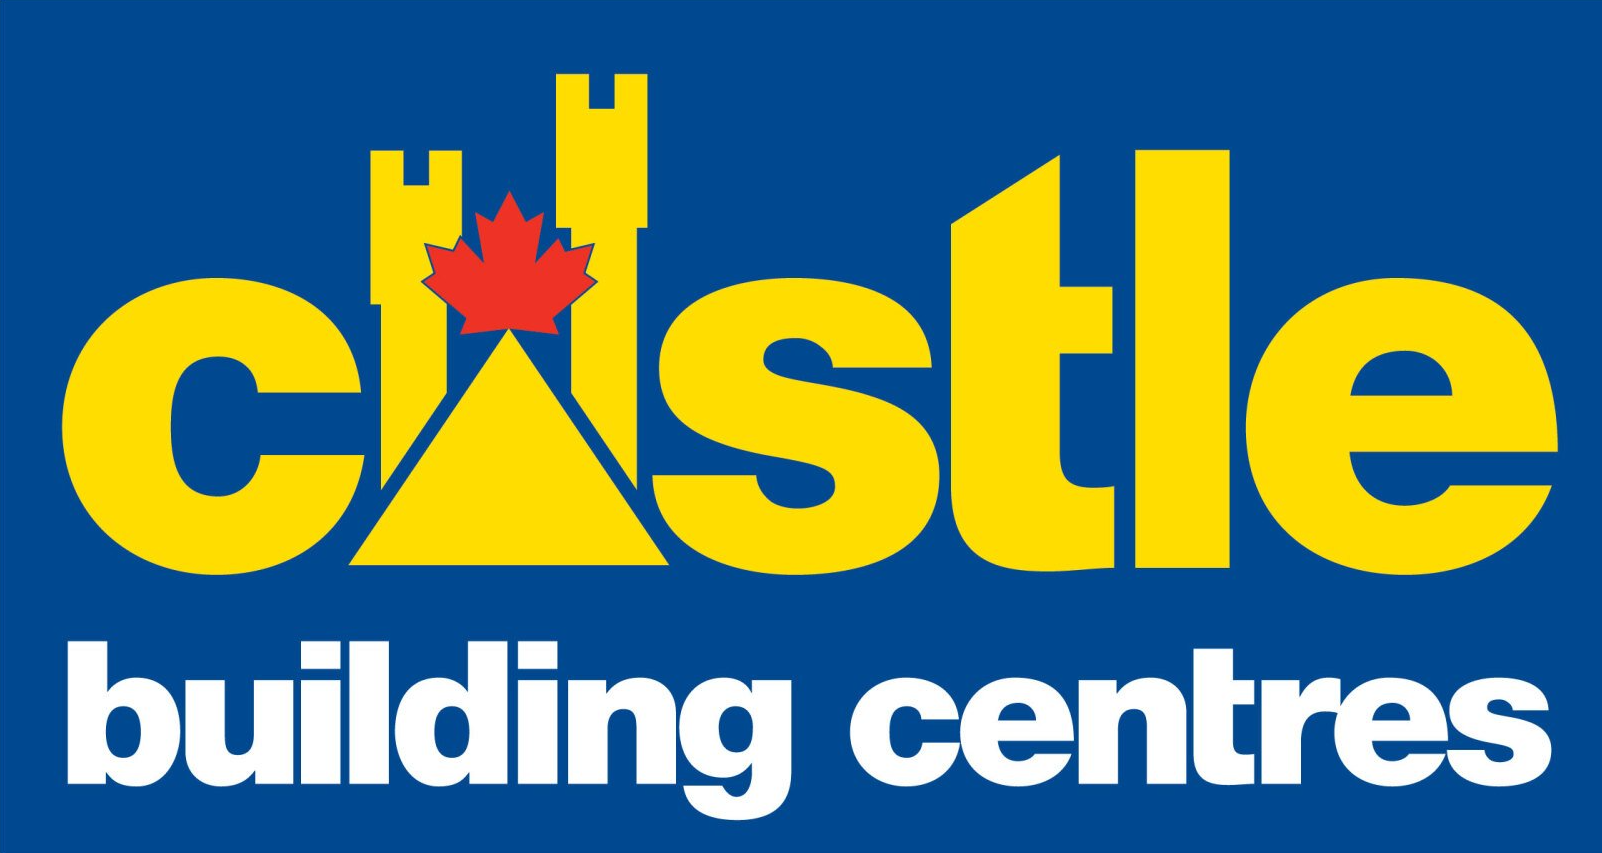 Castle building centeres logo